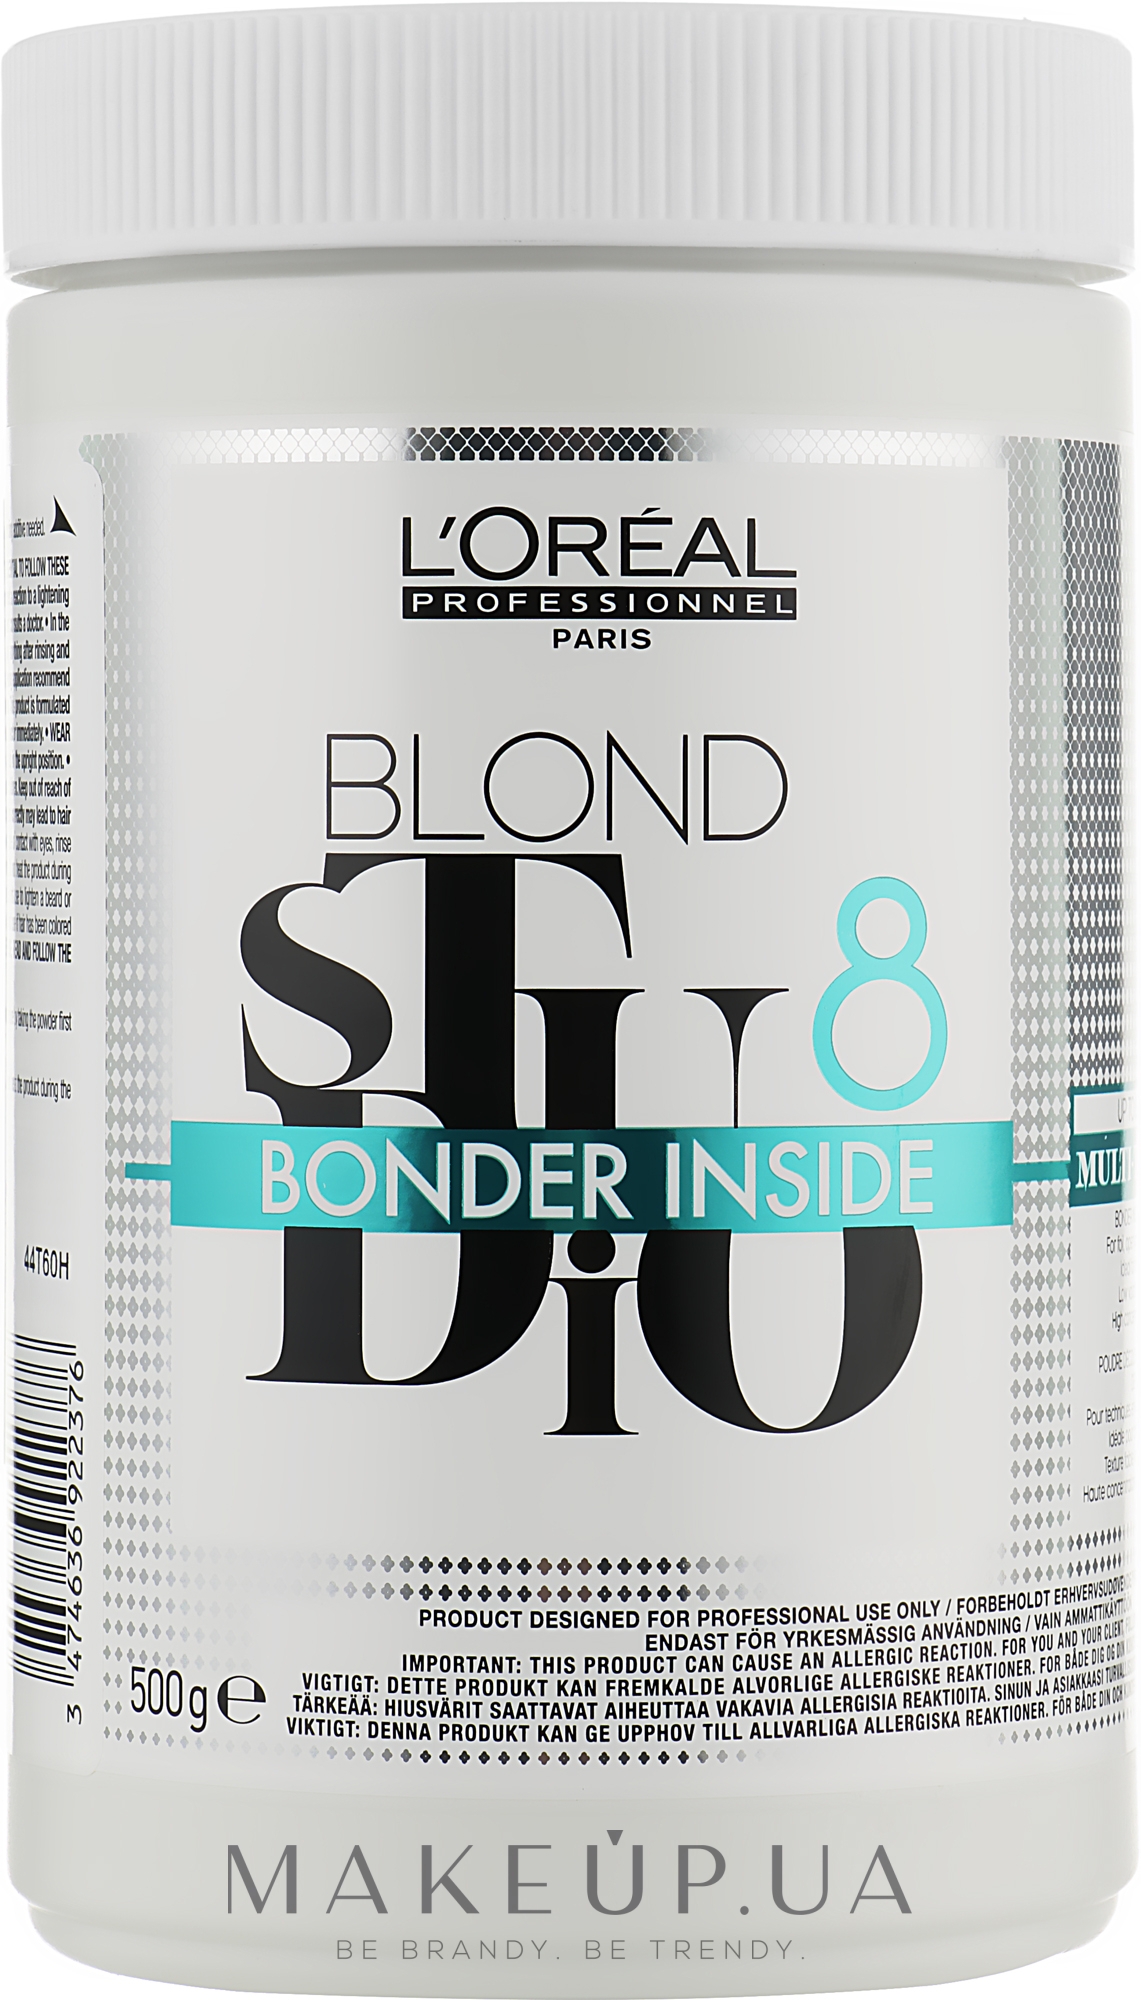 Пудра для осветления - L'Oreal Professionnel Blond Studio MT8 Blonder Inside — фото 500g